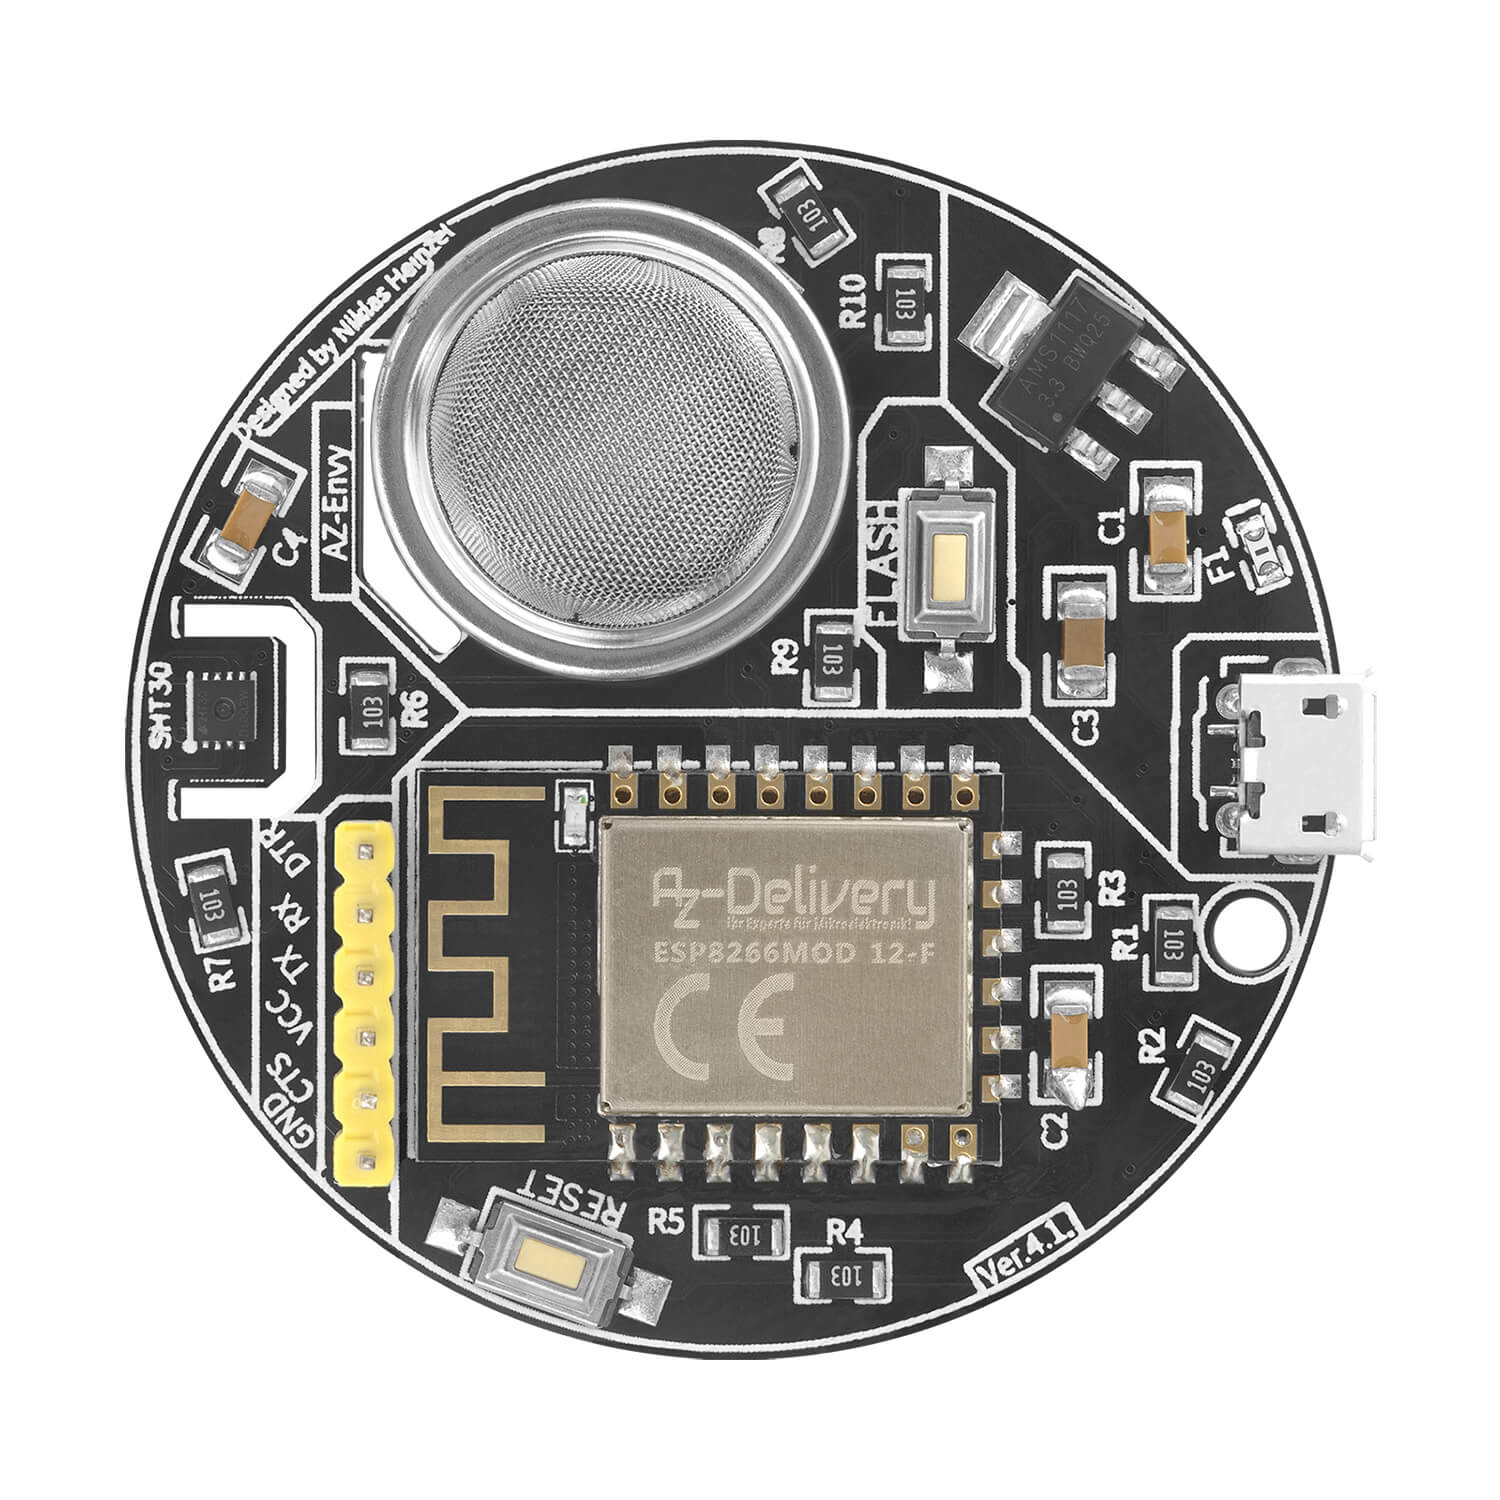 AZ-Envy Wlan ESP8266-12F Umwelt Entwicklungsboard mit Feuchtigkeits- und Luftqualitätssensor (MQ-2 und SHT30) kompatibel mit Arduino - AZ-Delivery